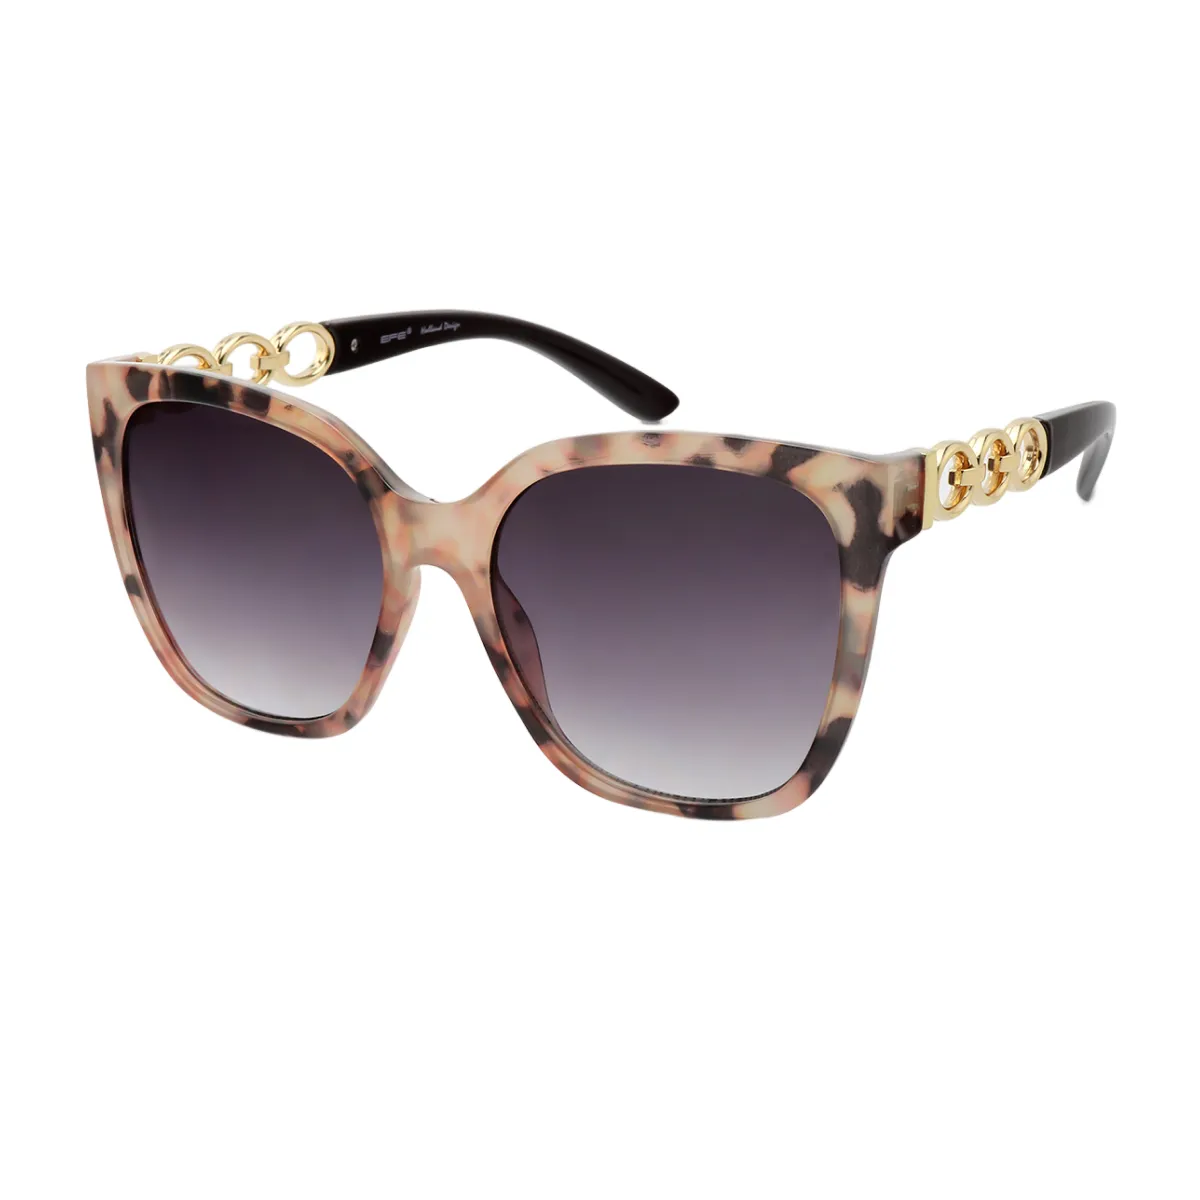 Livia - Square Tortoiseshell Sunglasses for Women